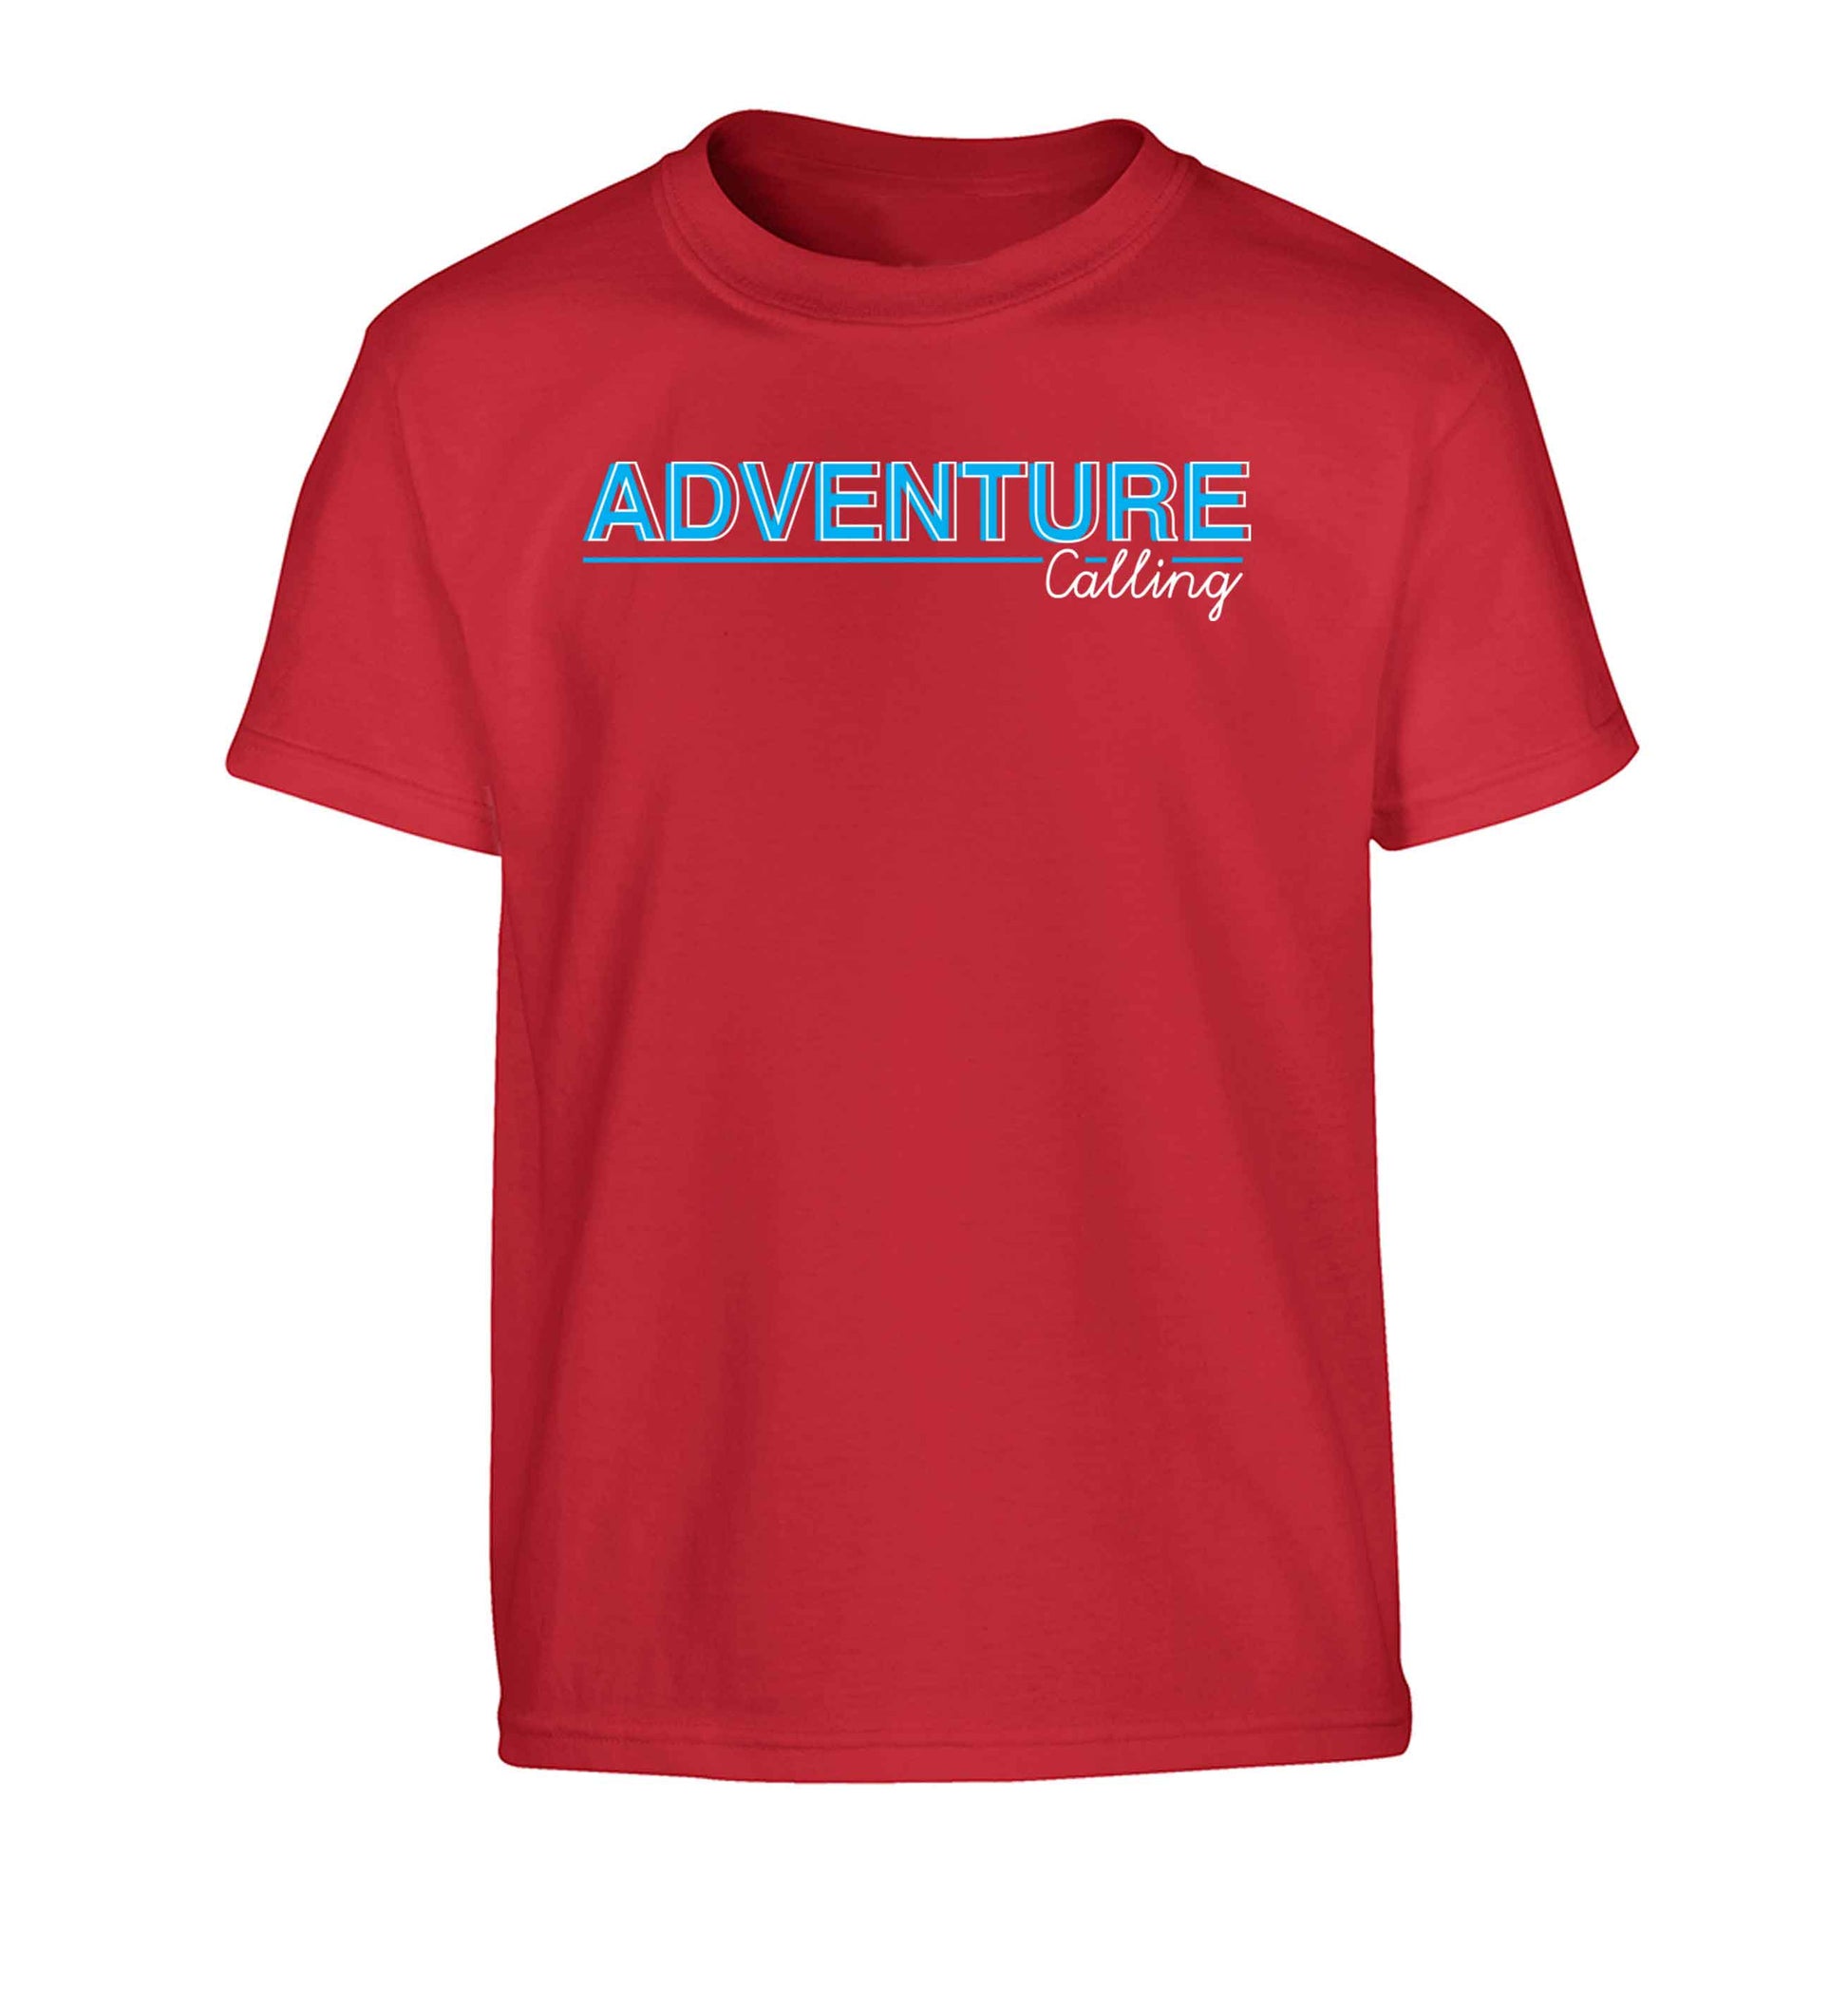 Adventure calling Children's red Tshirt 12-13 Years